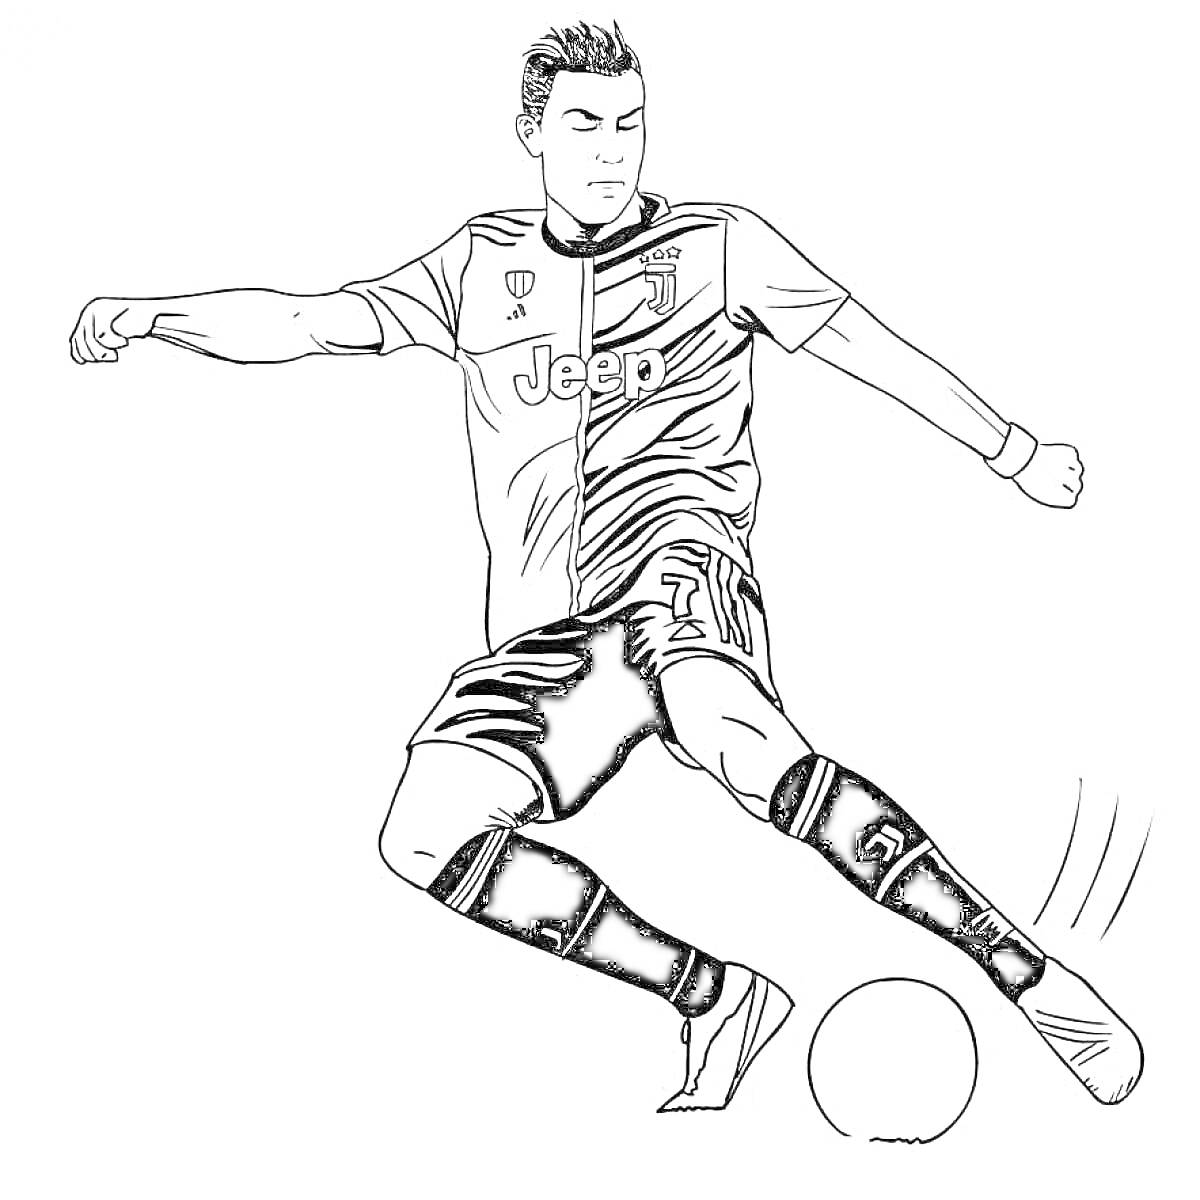 Раскраска Спортивная раскраска футболиста в действии. Футболист одет в футбольную форму c логотипом Jeep, бьет по мячу